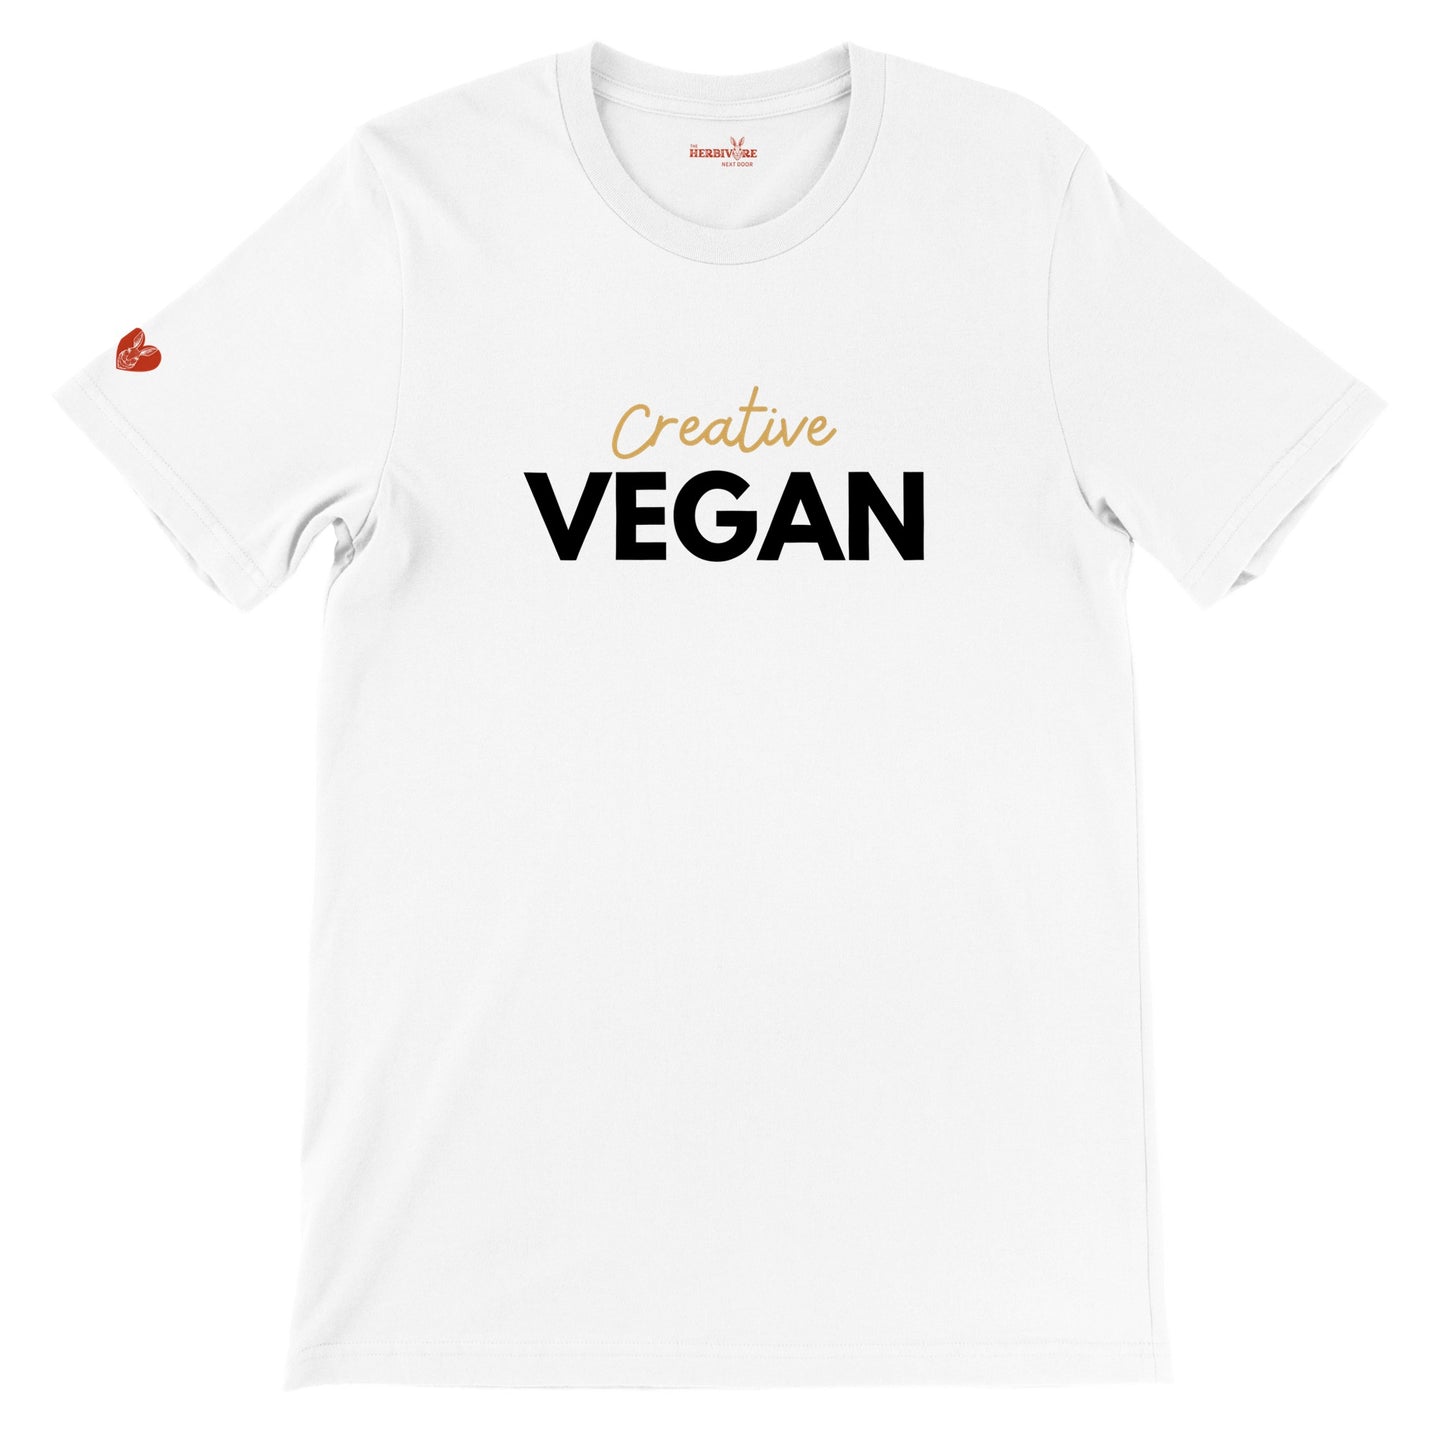 Creative Vegan - Unisex